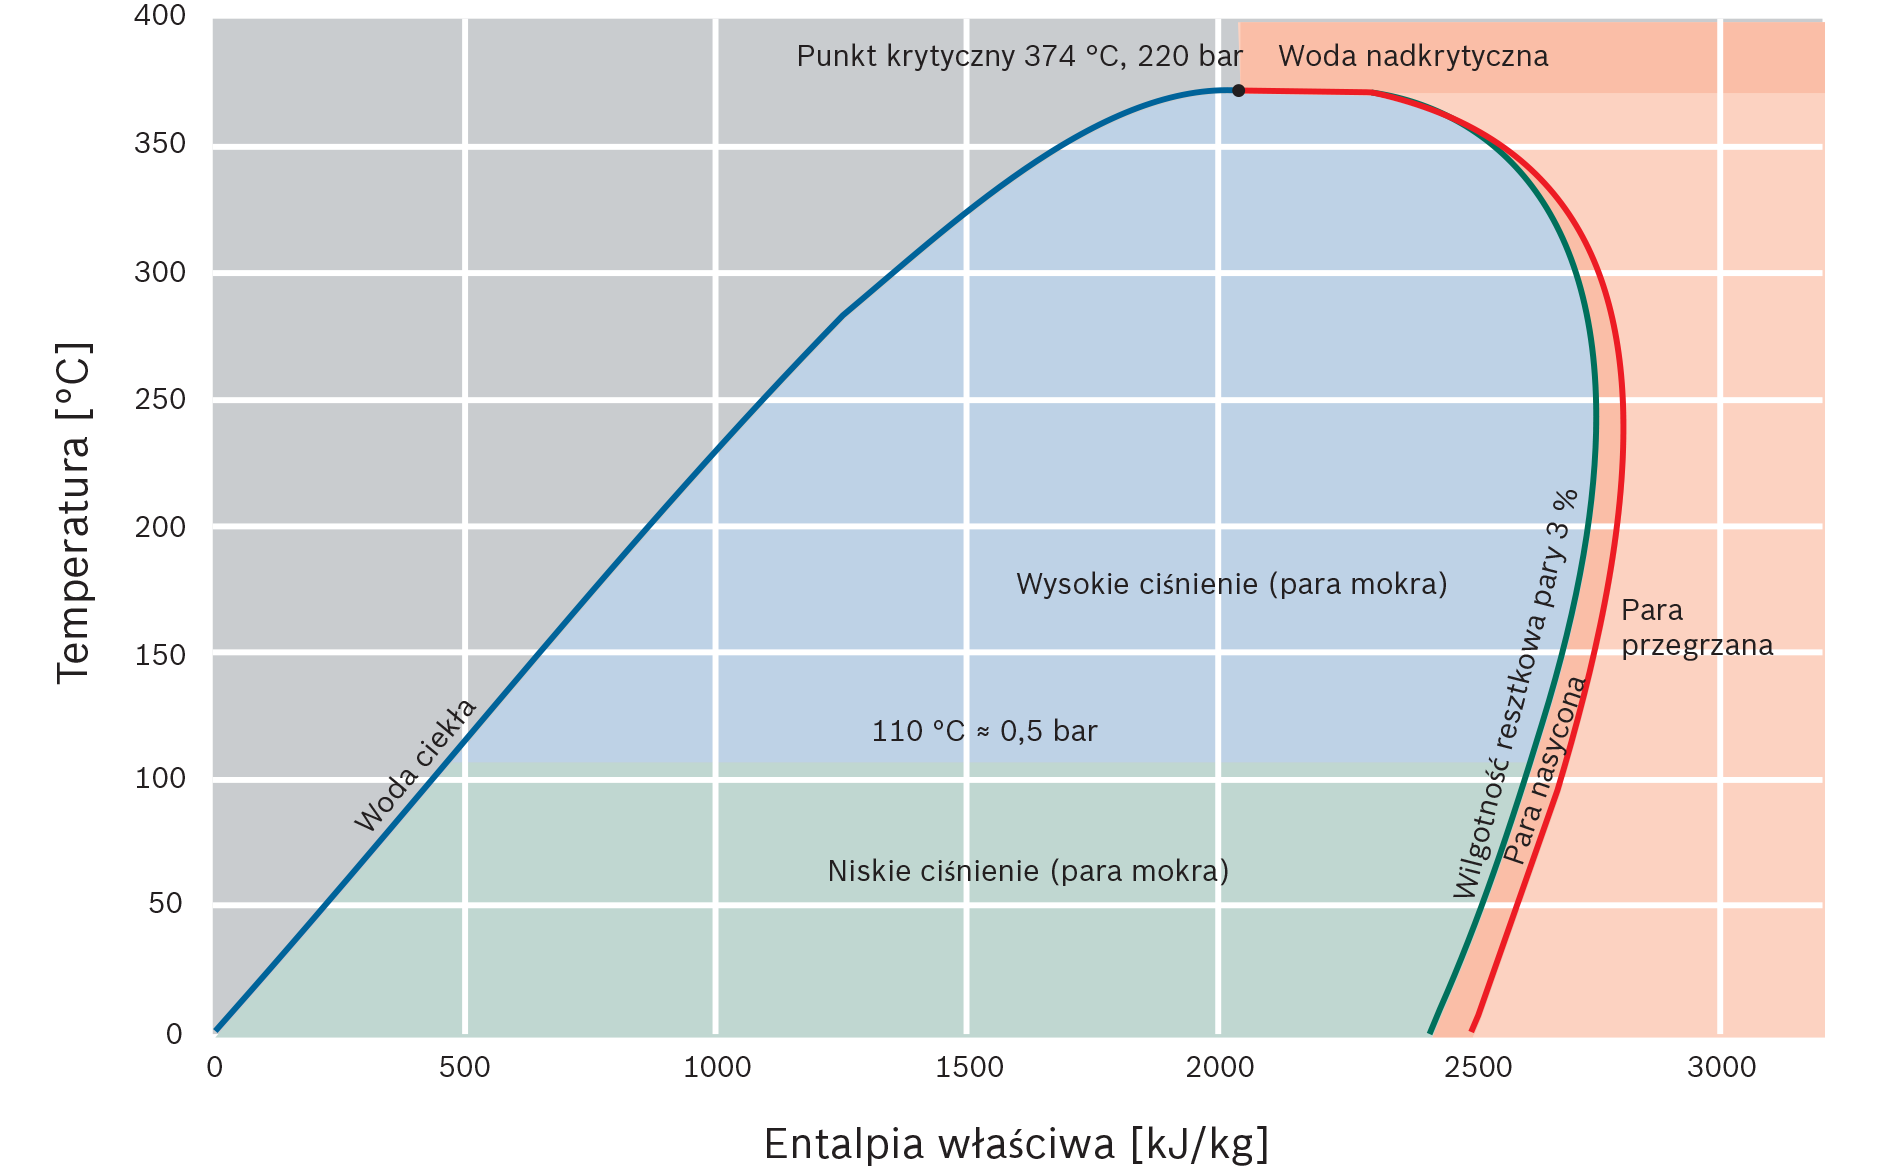 Wykres stanu wody i pary w układzie entalpia-temperatura (wykres T-h) z opisami powierzchni w rozumieniu technicznym